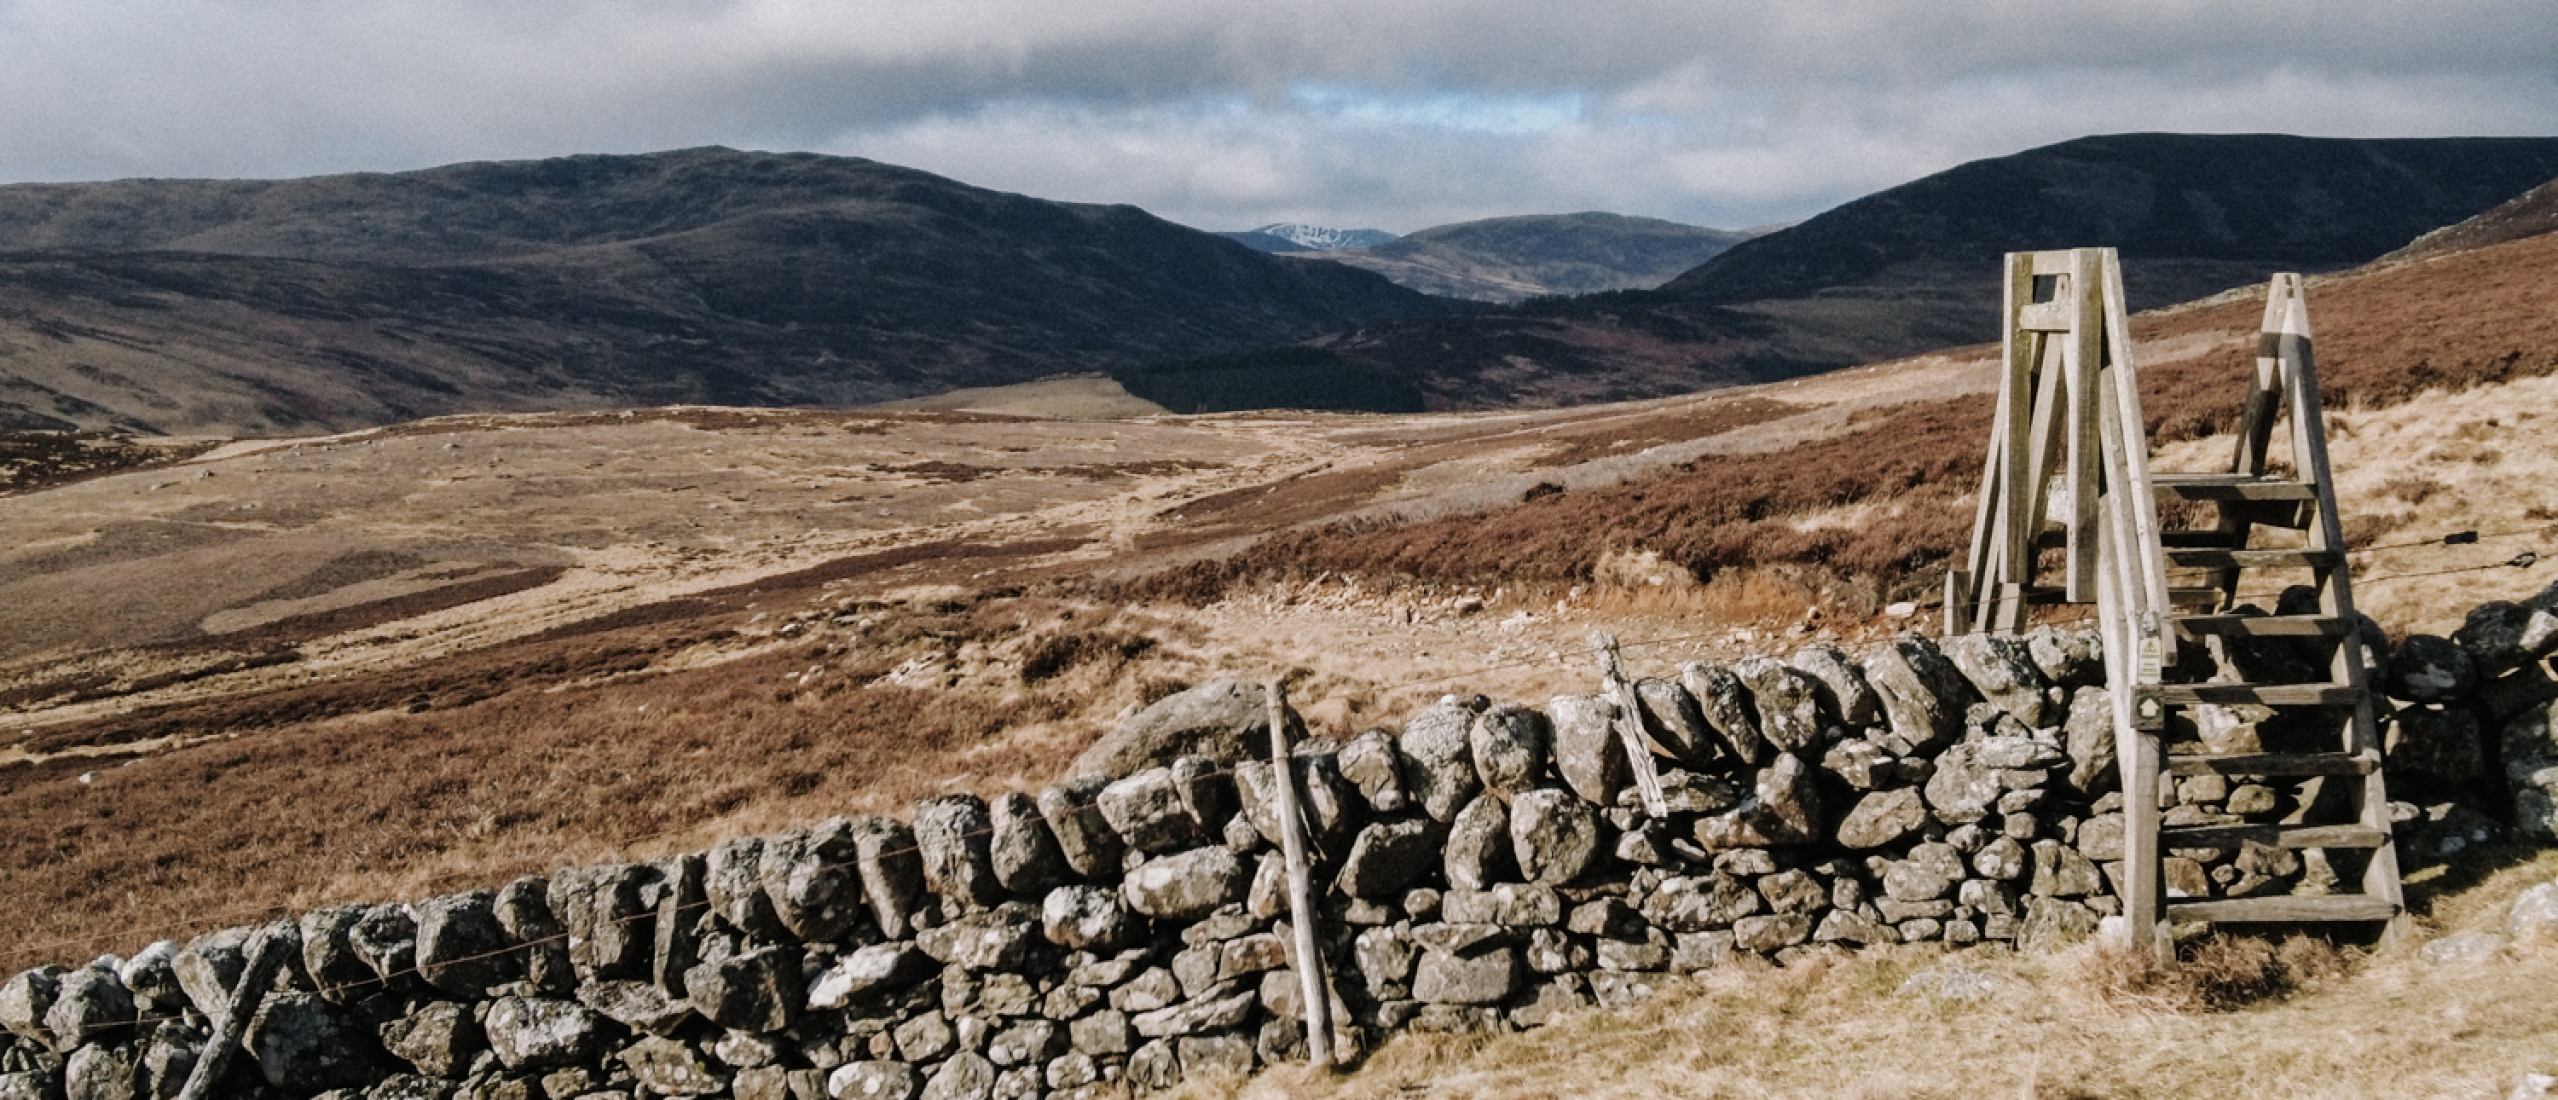 Cateran Trail: 100 km door het zuiden van de Cairngorms